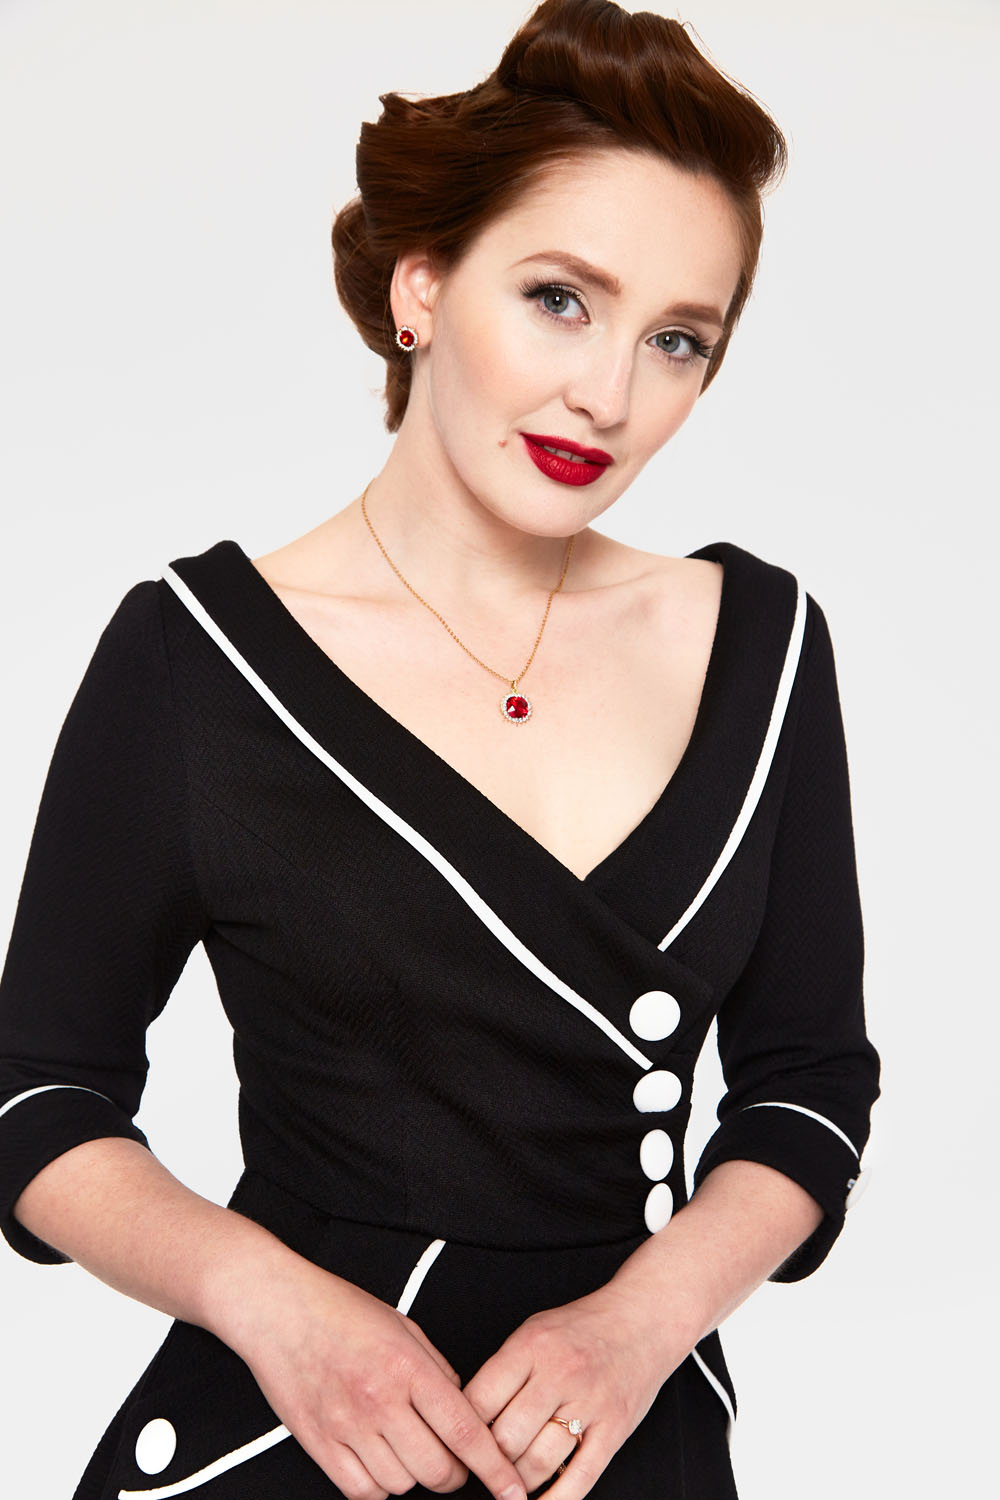 Marica 1950s Black Herringbone Wide Collar Flared Dress